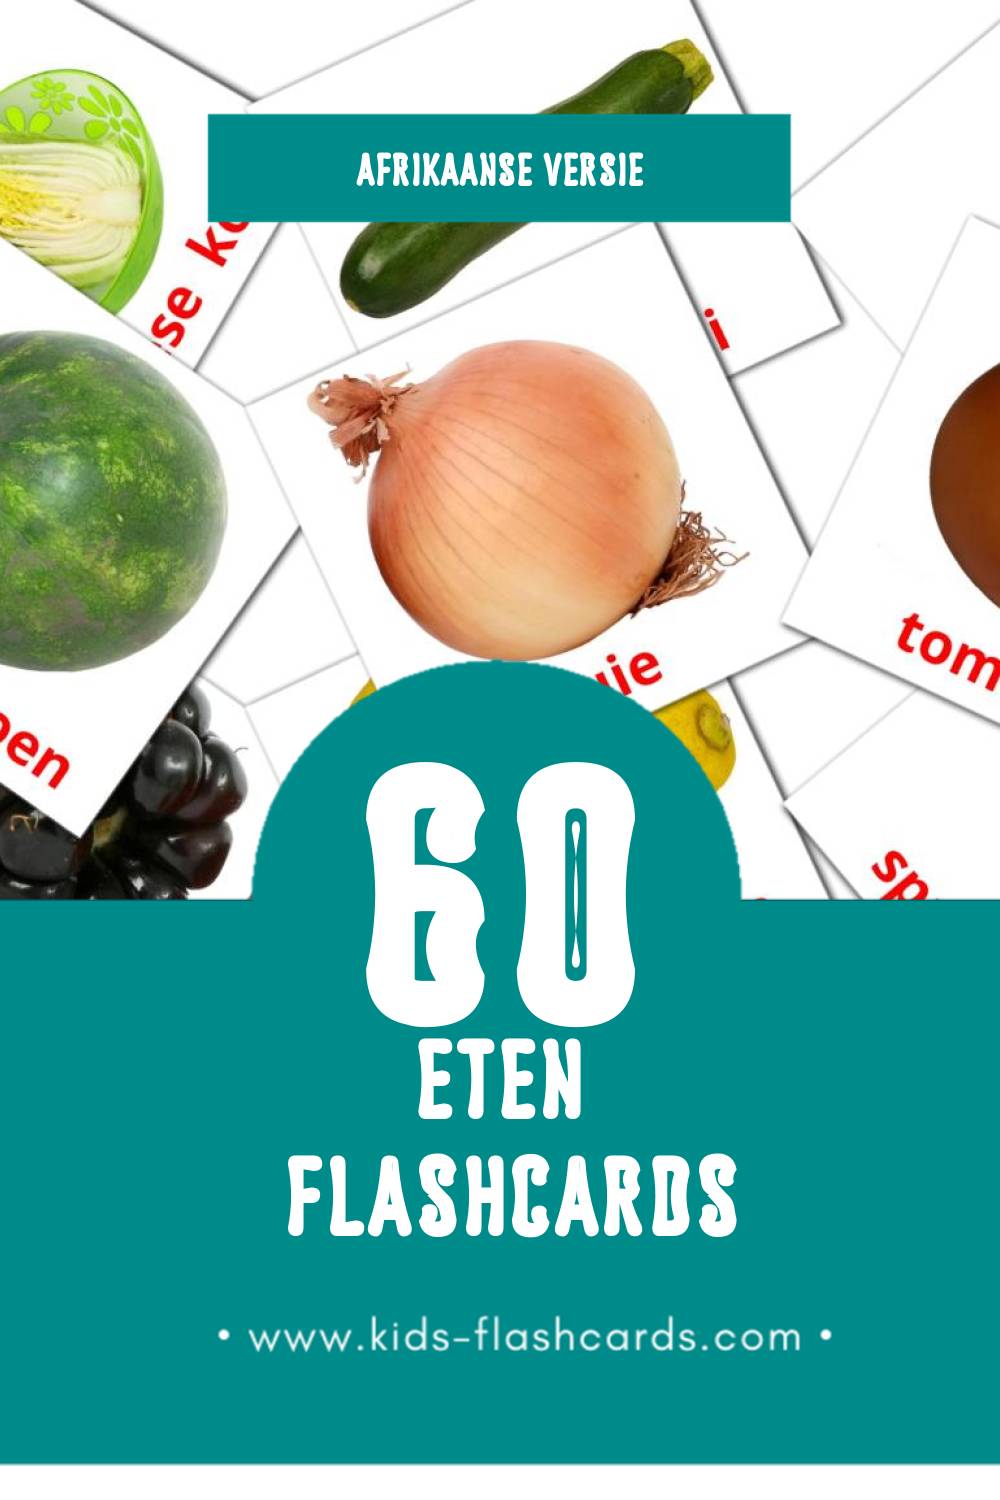 Visuele Kos Flashcards voor Kleuters (60 kaarten in het Afrikaans)